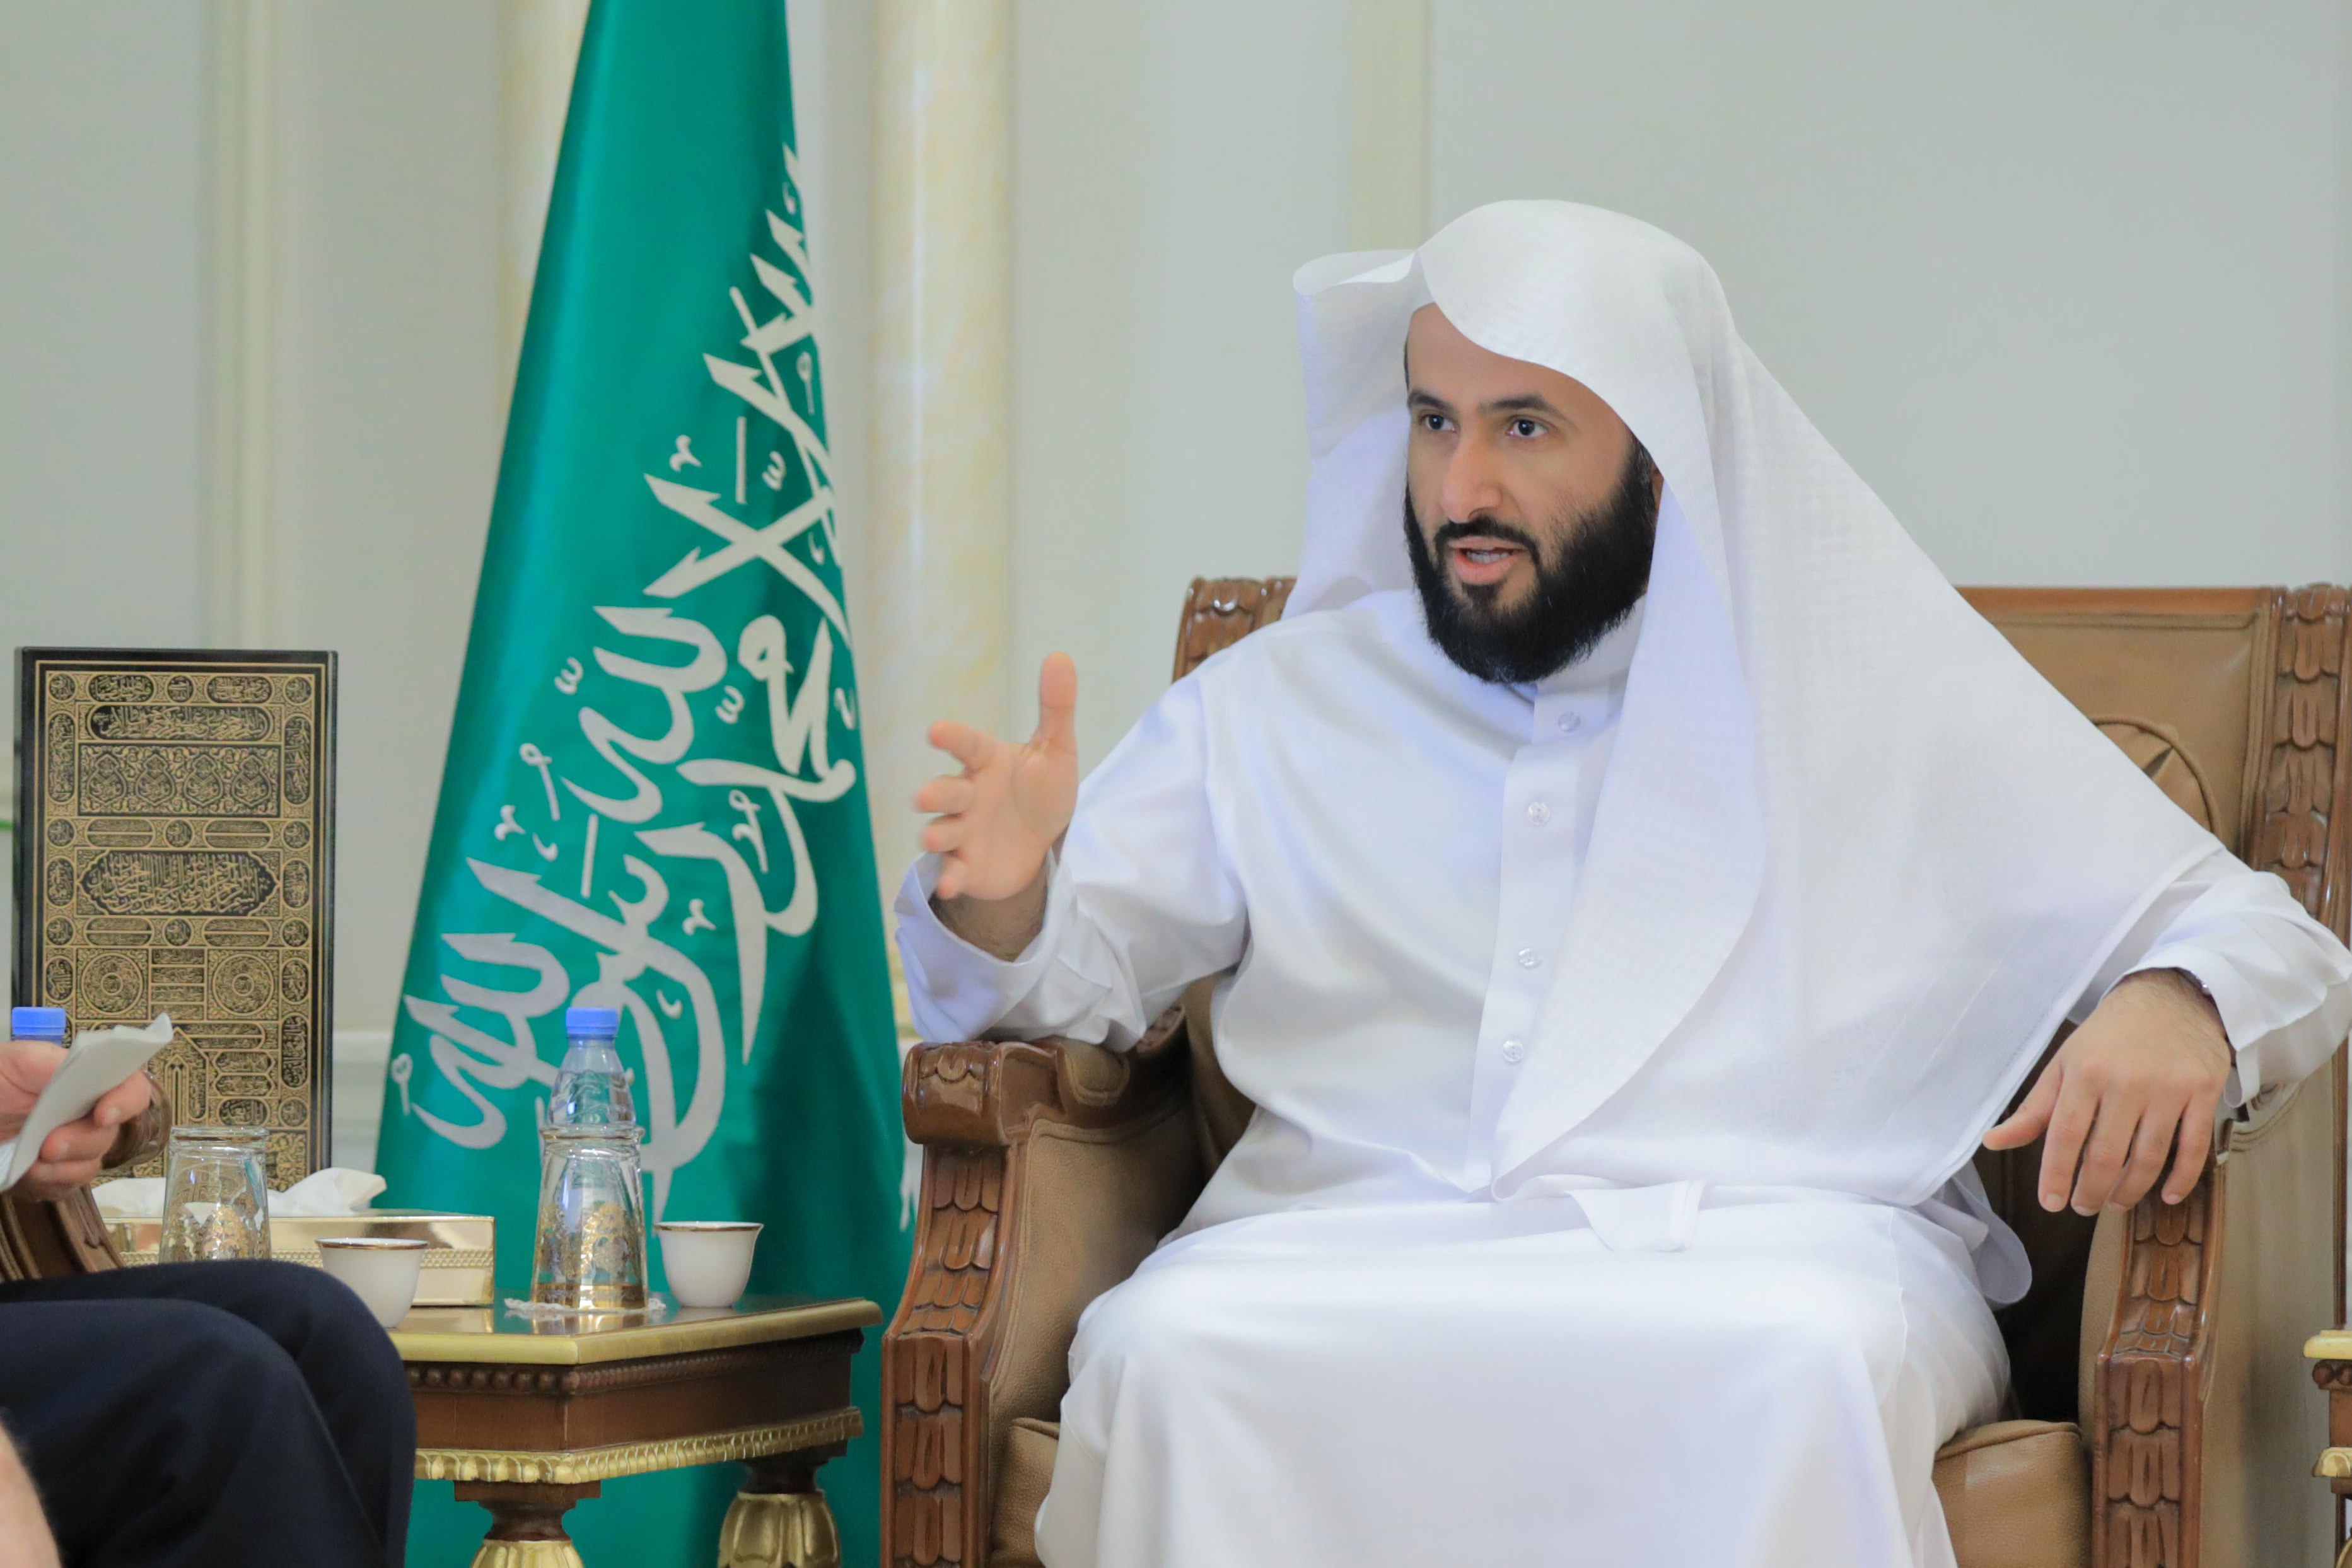 المؤتمر السعودي للقانون ينطلق في الرياض بشعار تعزيز بيئة أعمال مستدامة وشاملة